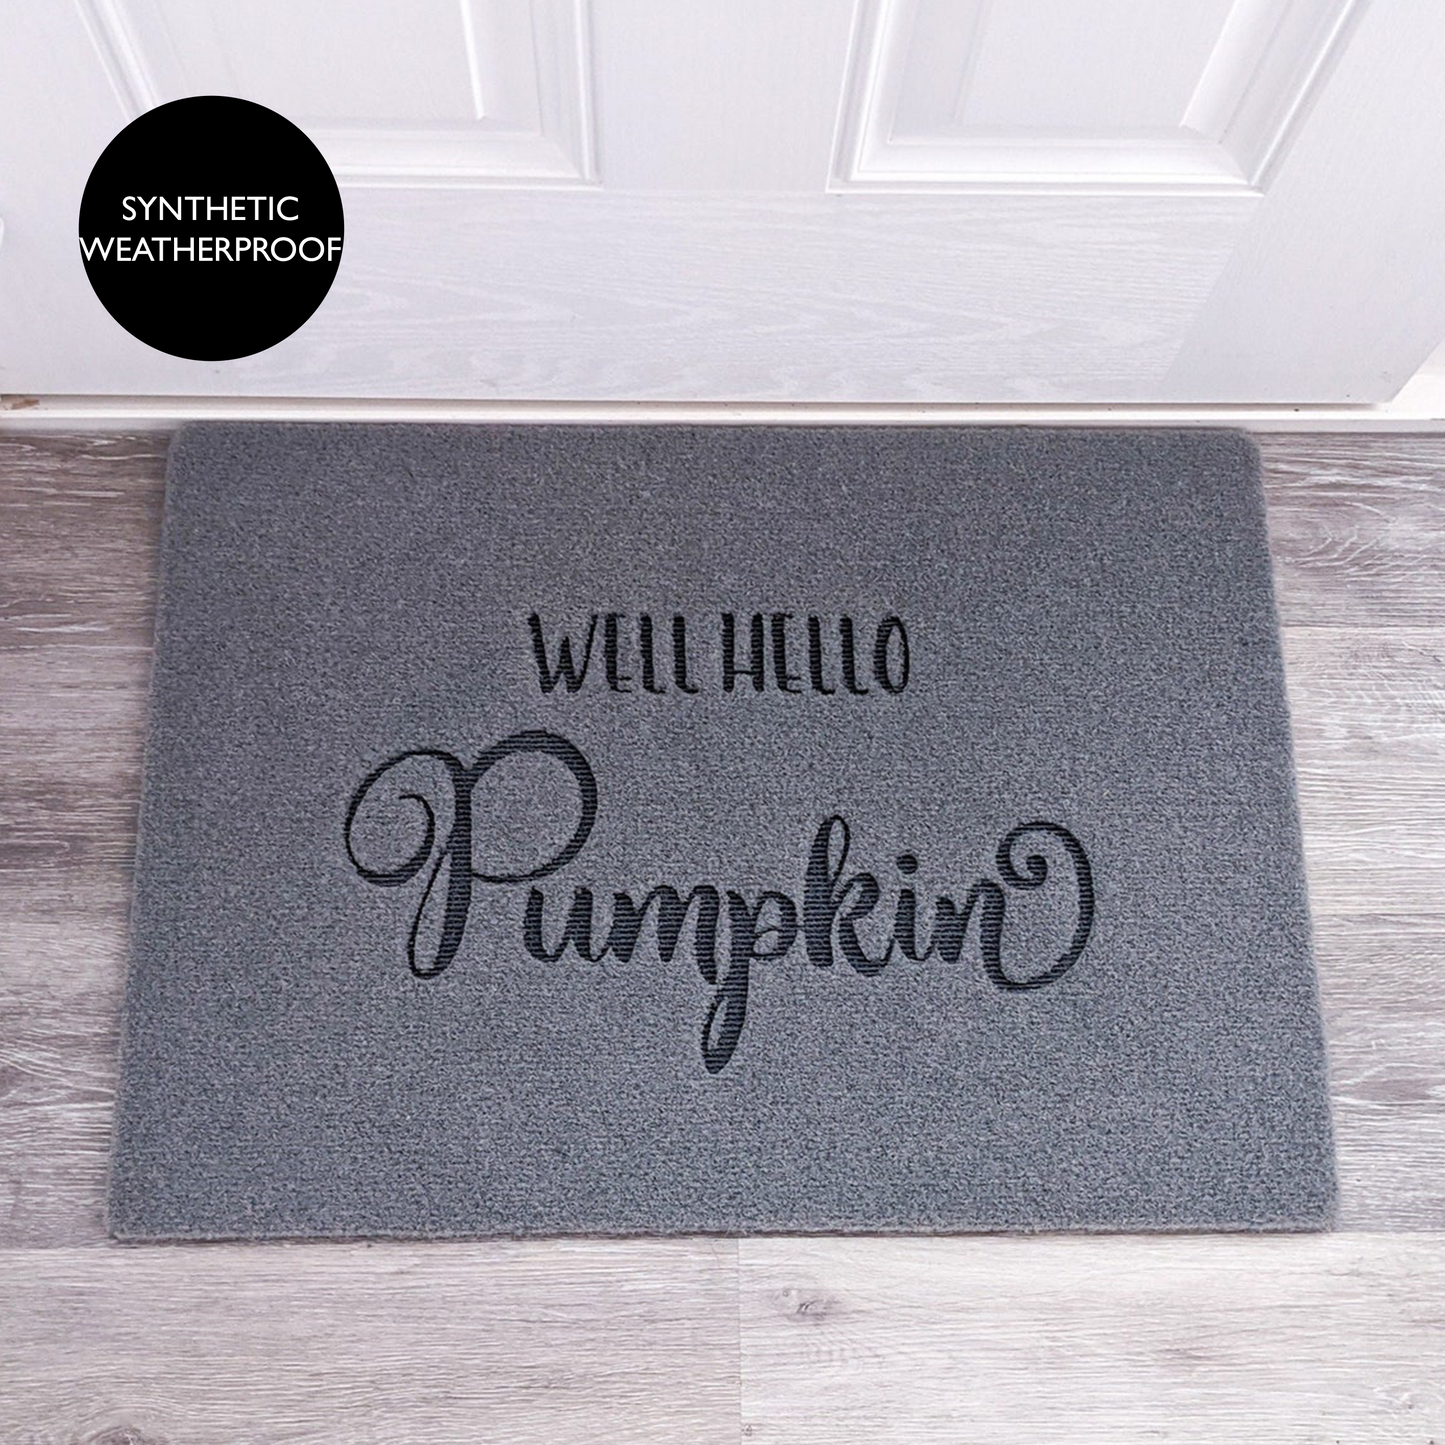 Hello Pumpkin Doormat - Grey Synthetic Weatherproof Coir for Outdoor or Indoor Use